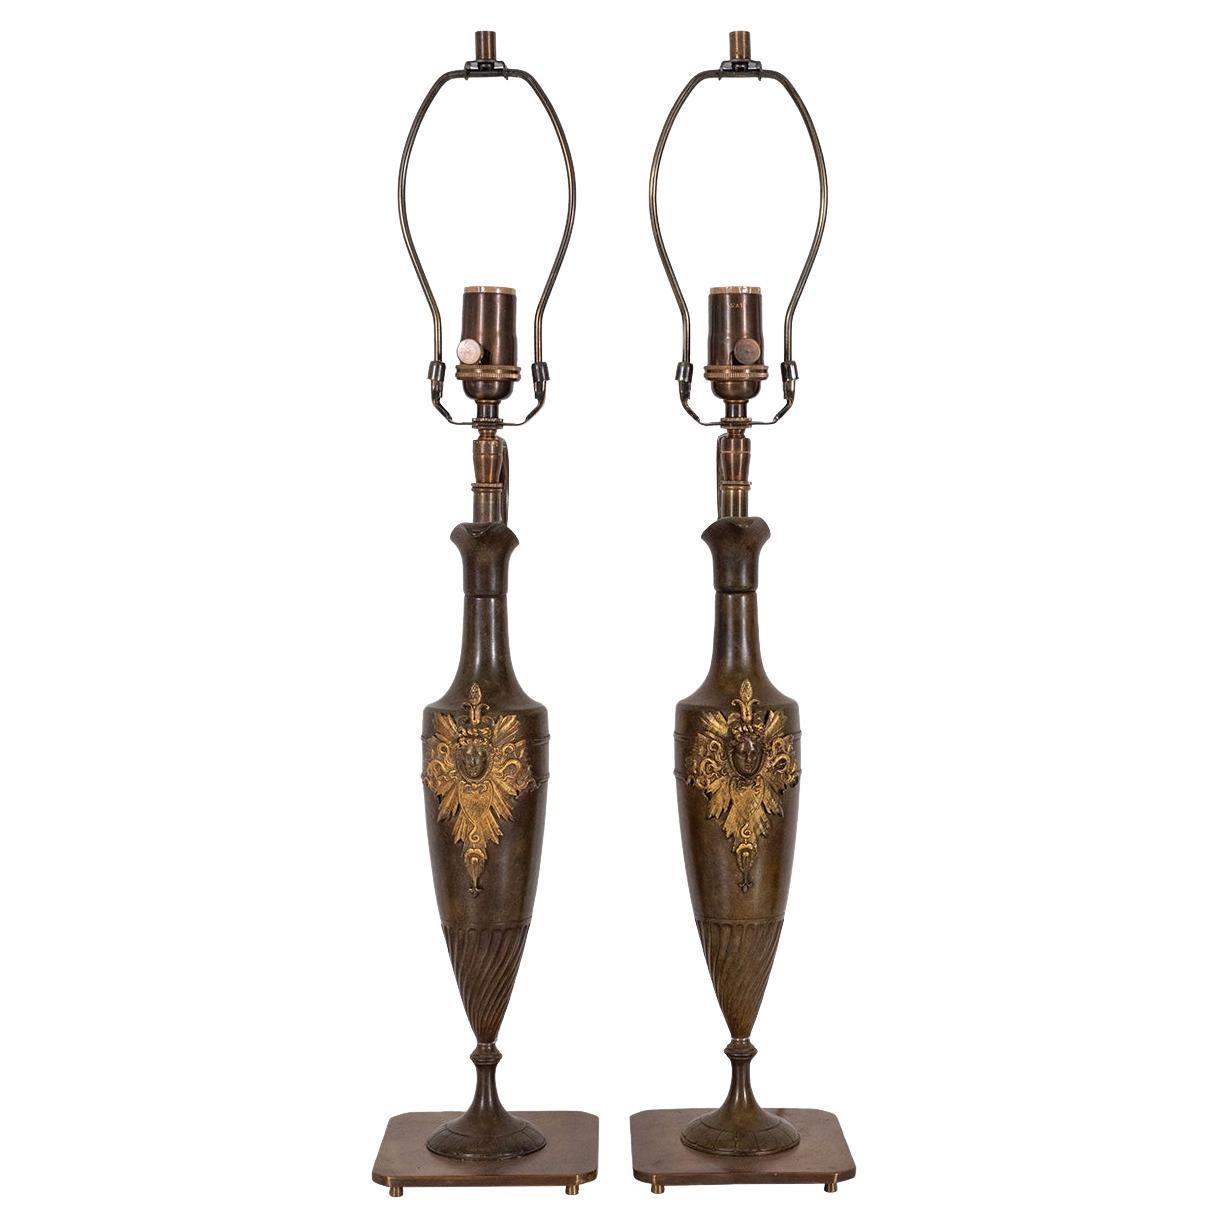 Paar bronzene amphorenförmige Tischlampen